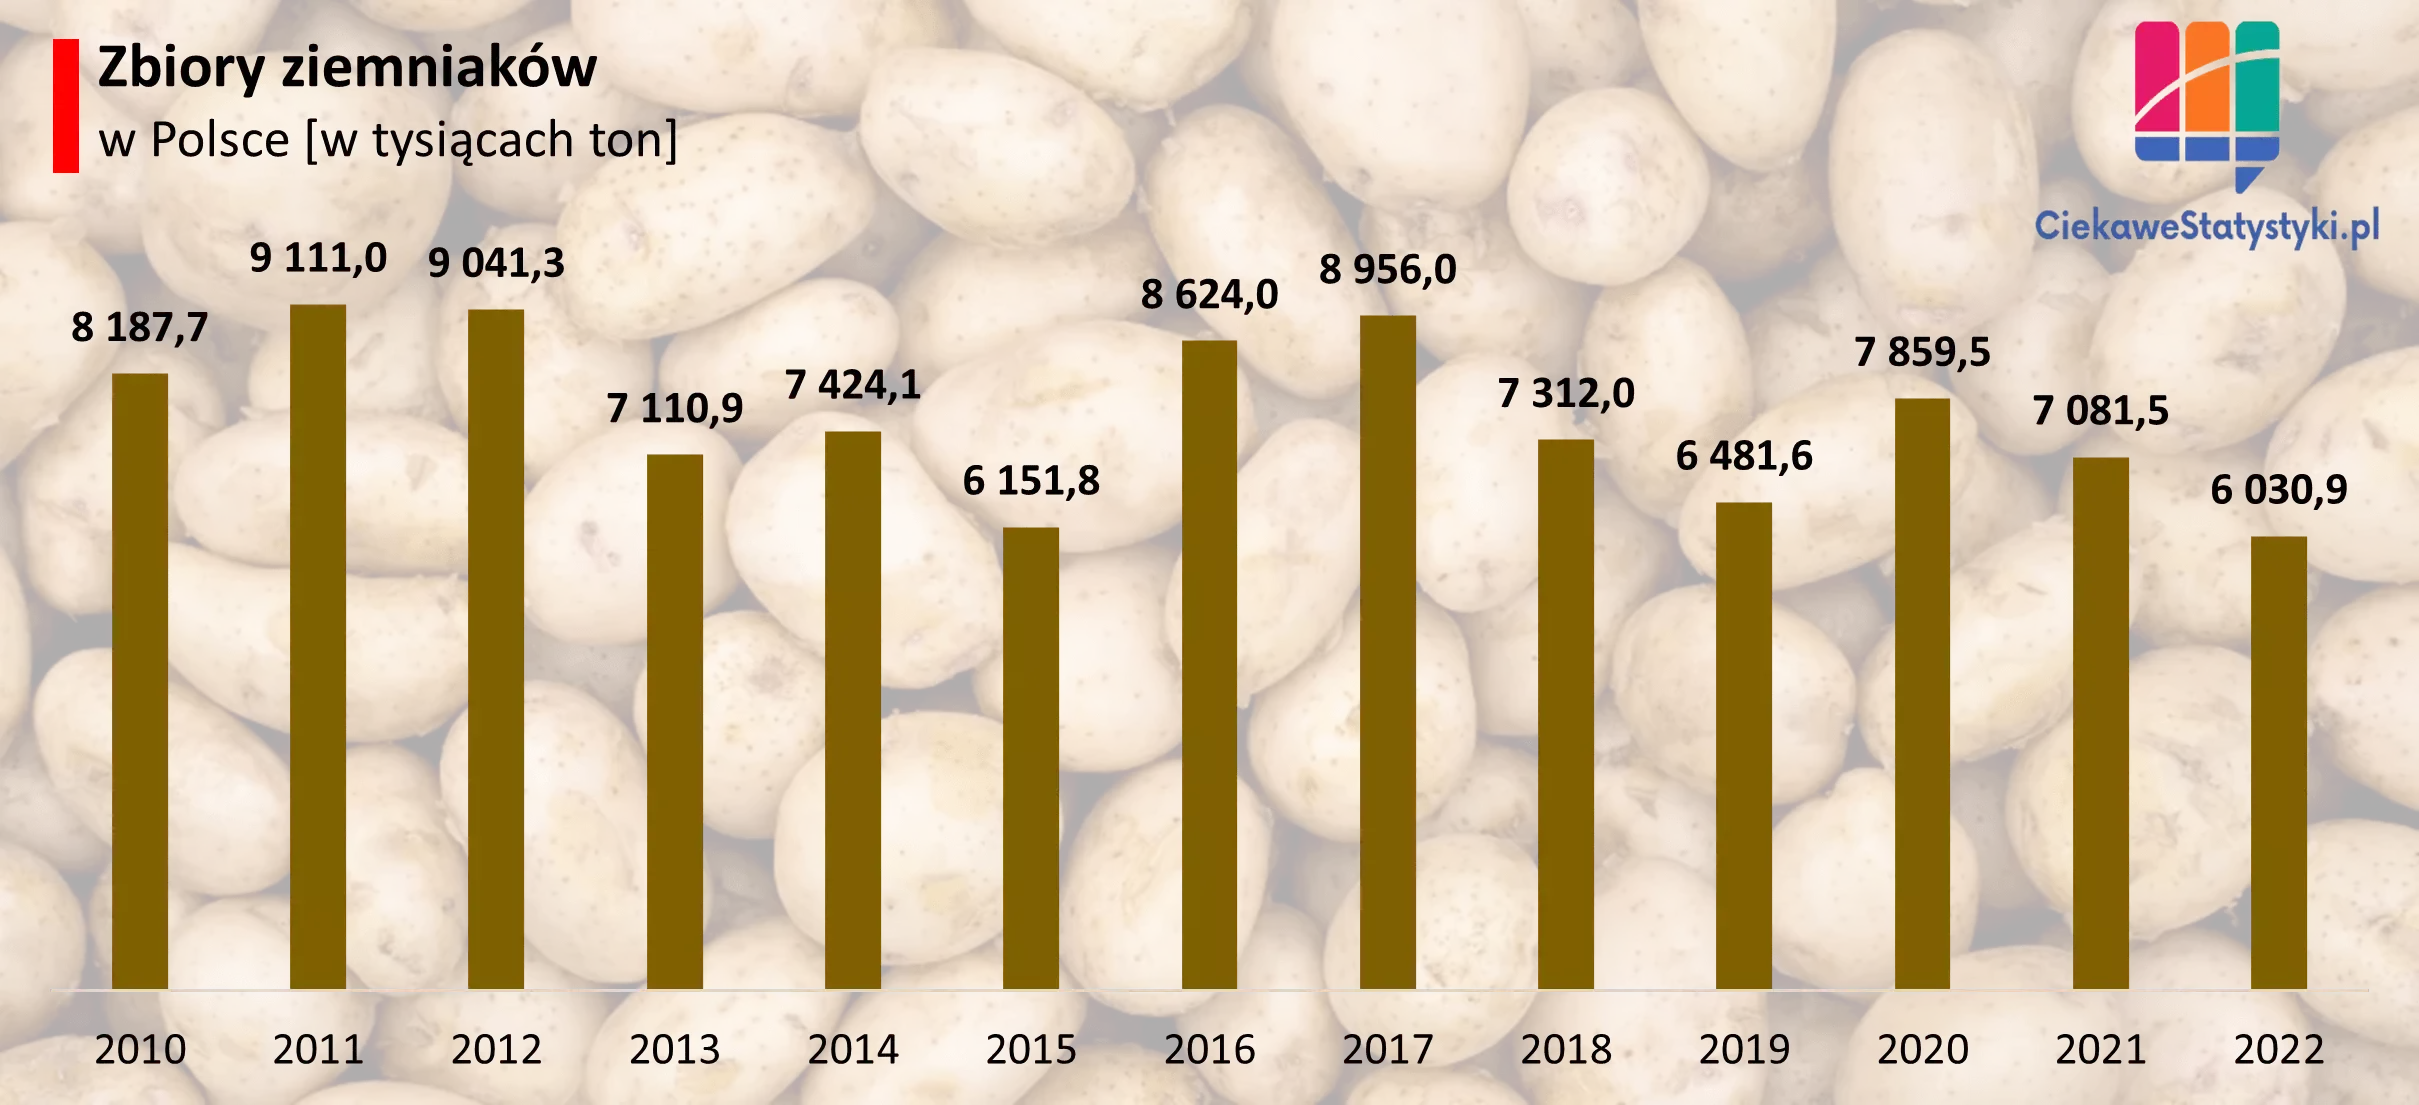 Wykres prezentuje ile ziemniaków zbiera się w Polsce na przestrzeni lat